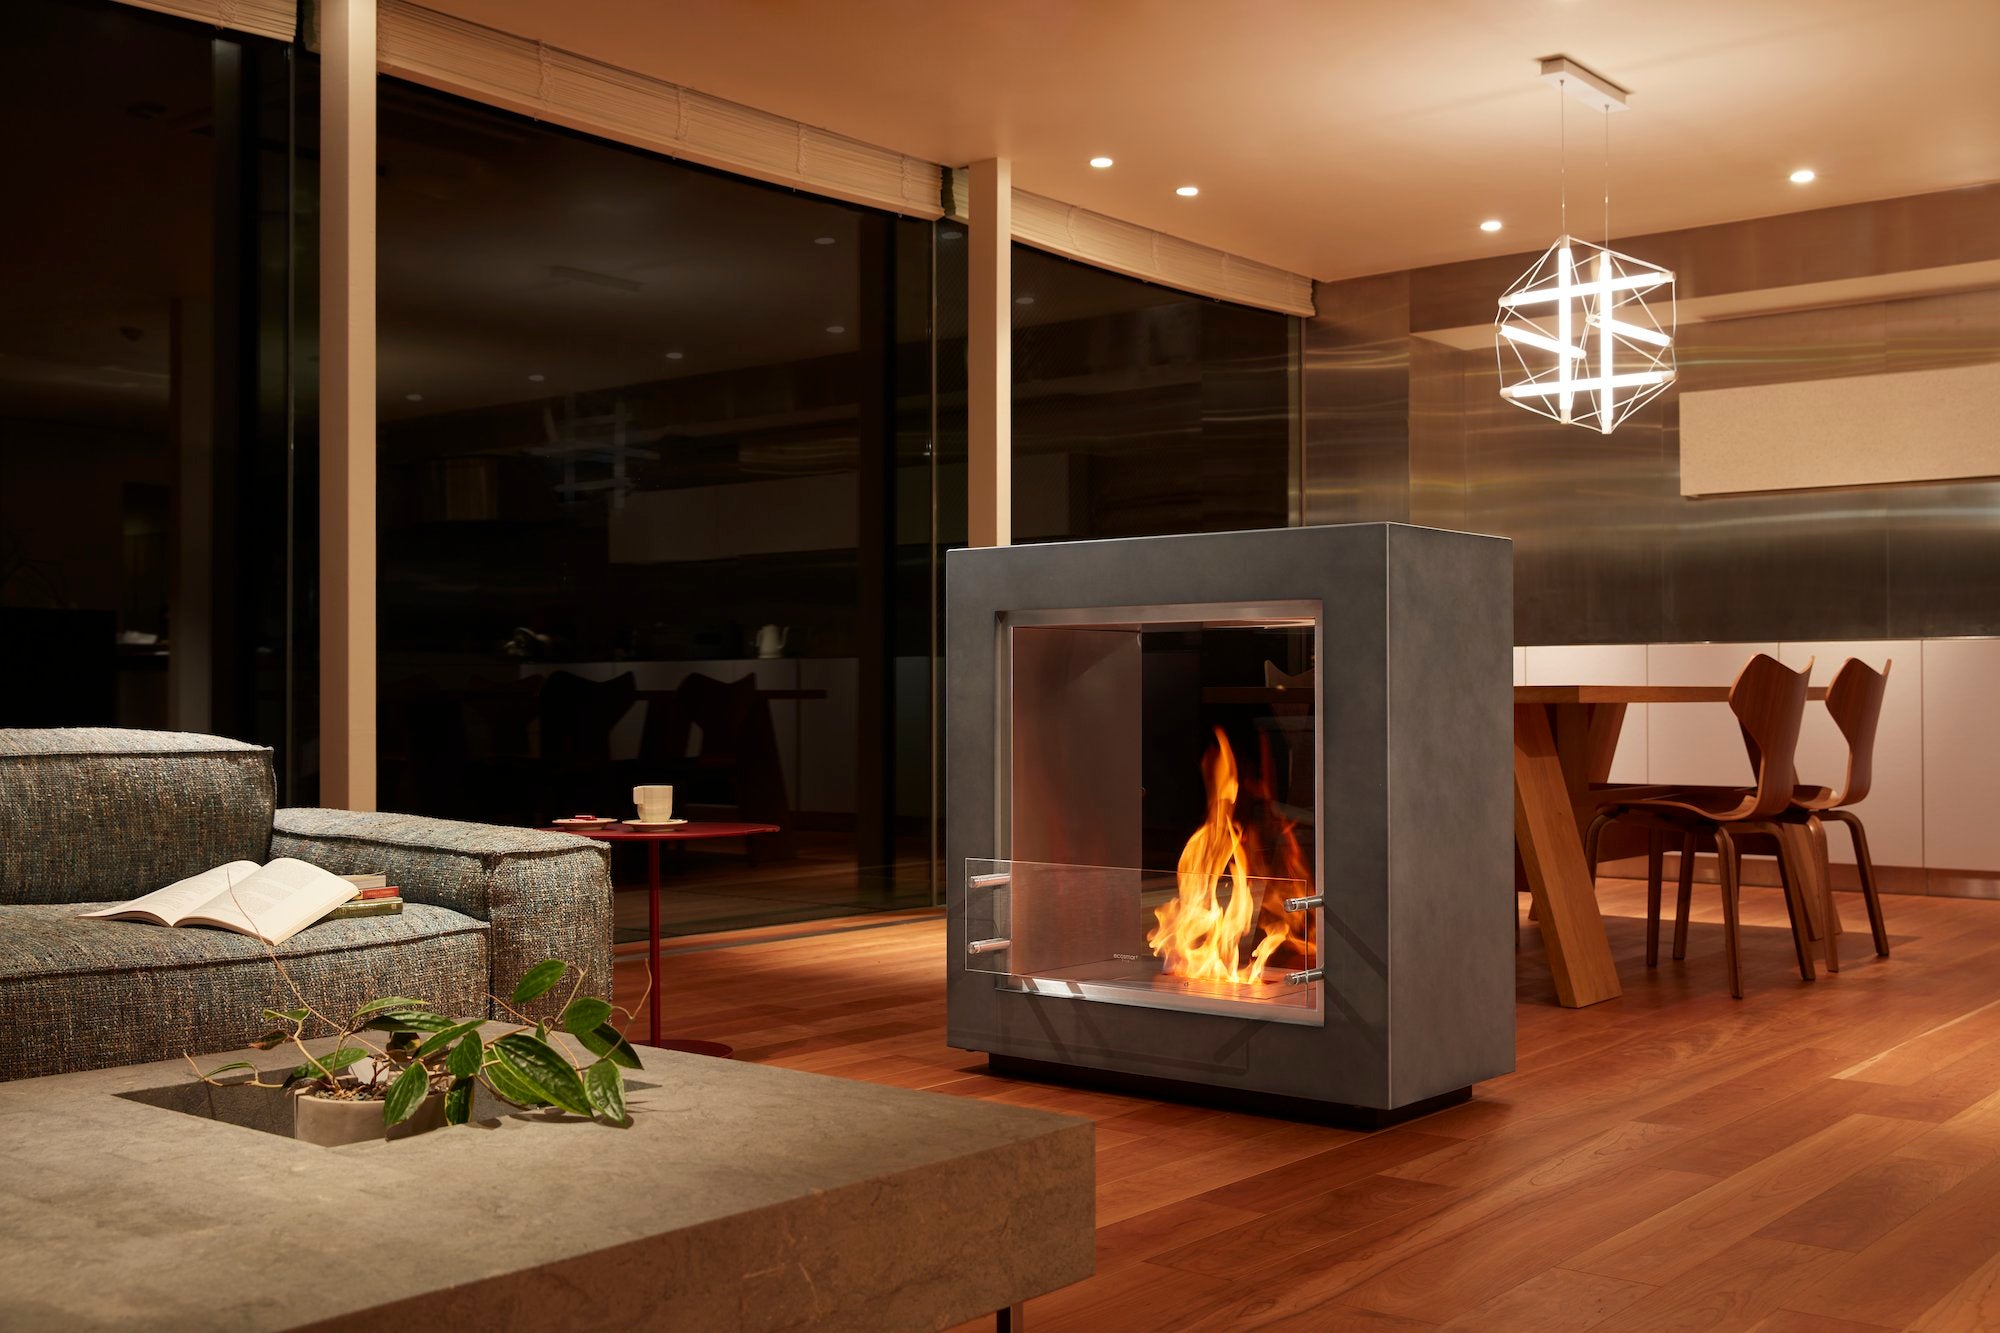 バイオエタノール暖炉「EcoSmart Fire」製品のFUSION STANDARD COLORをリビングに置いてある画像。暖炉と違って工事が不要なため、自由な場所に配置できています。